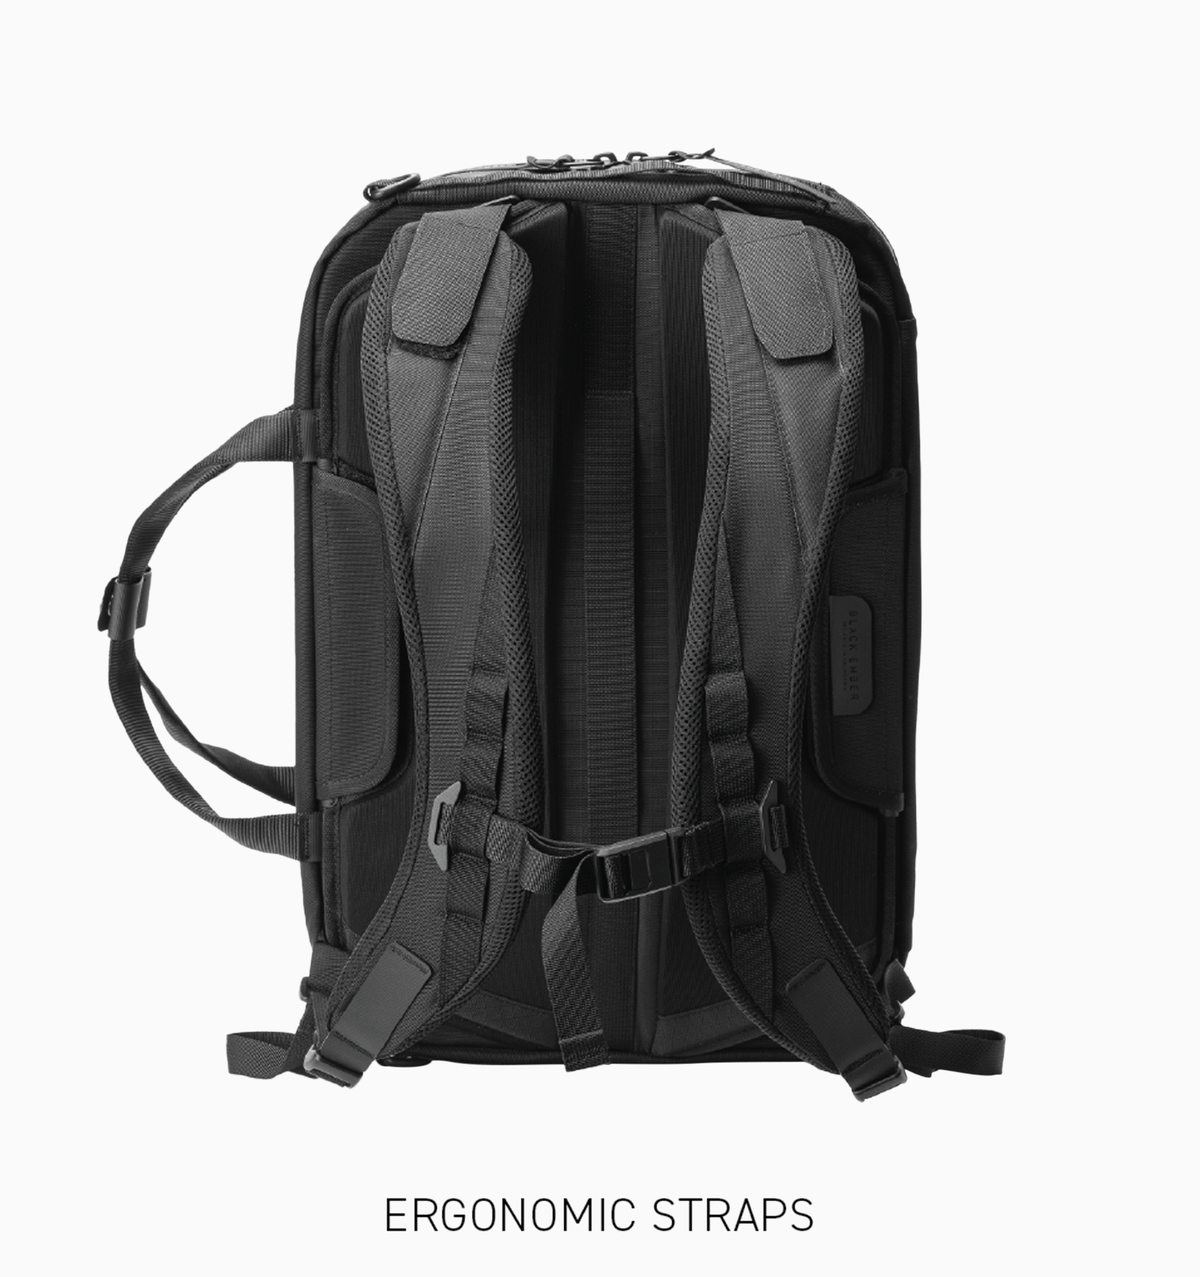 Black Ember 16" Forge Backpack 30L - RN66